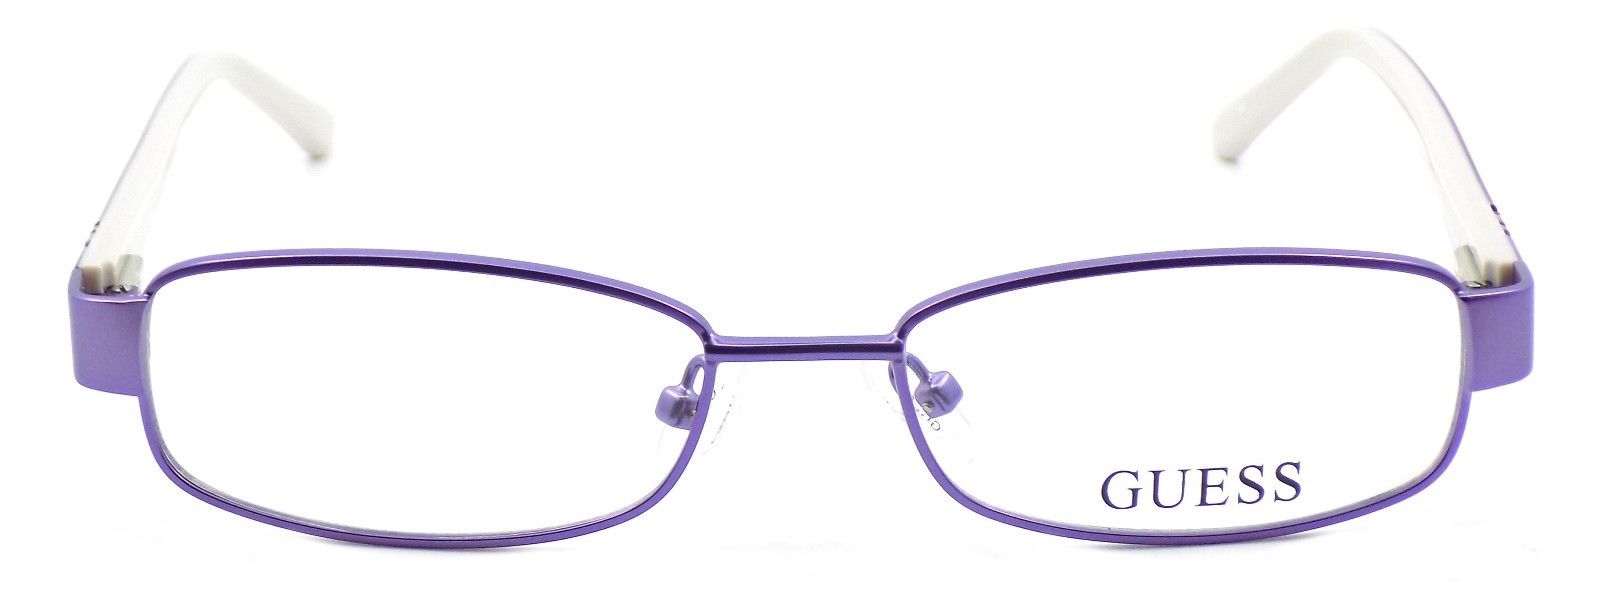 2-GUESS GU9127 PUR Women's Eyeglasses Frames PETITE 49-16-130 Purple Violet + CASE-715583033641-IKSpecs